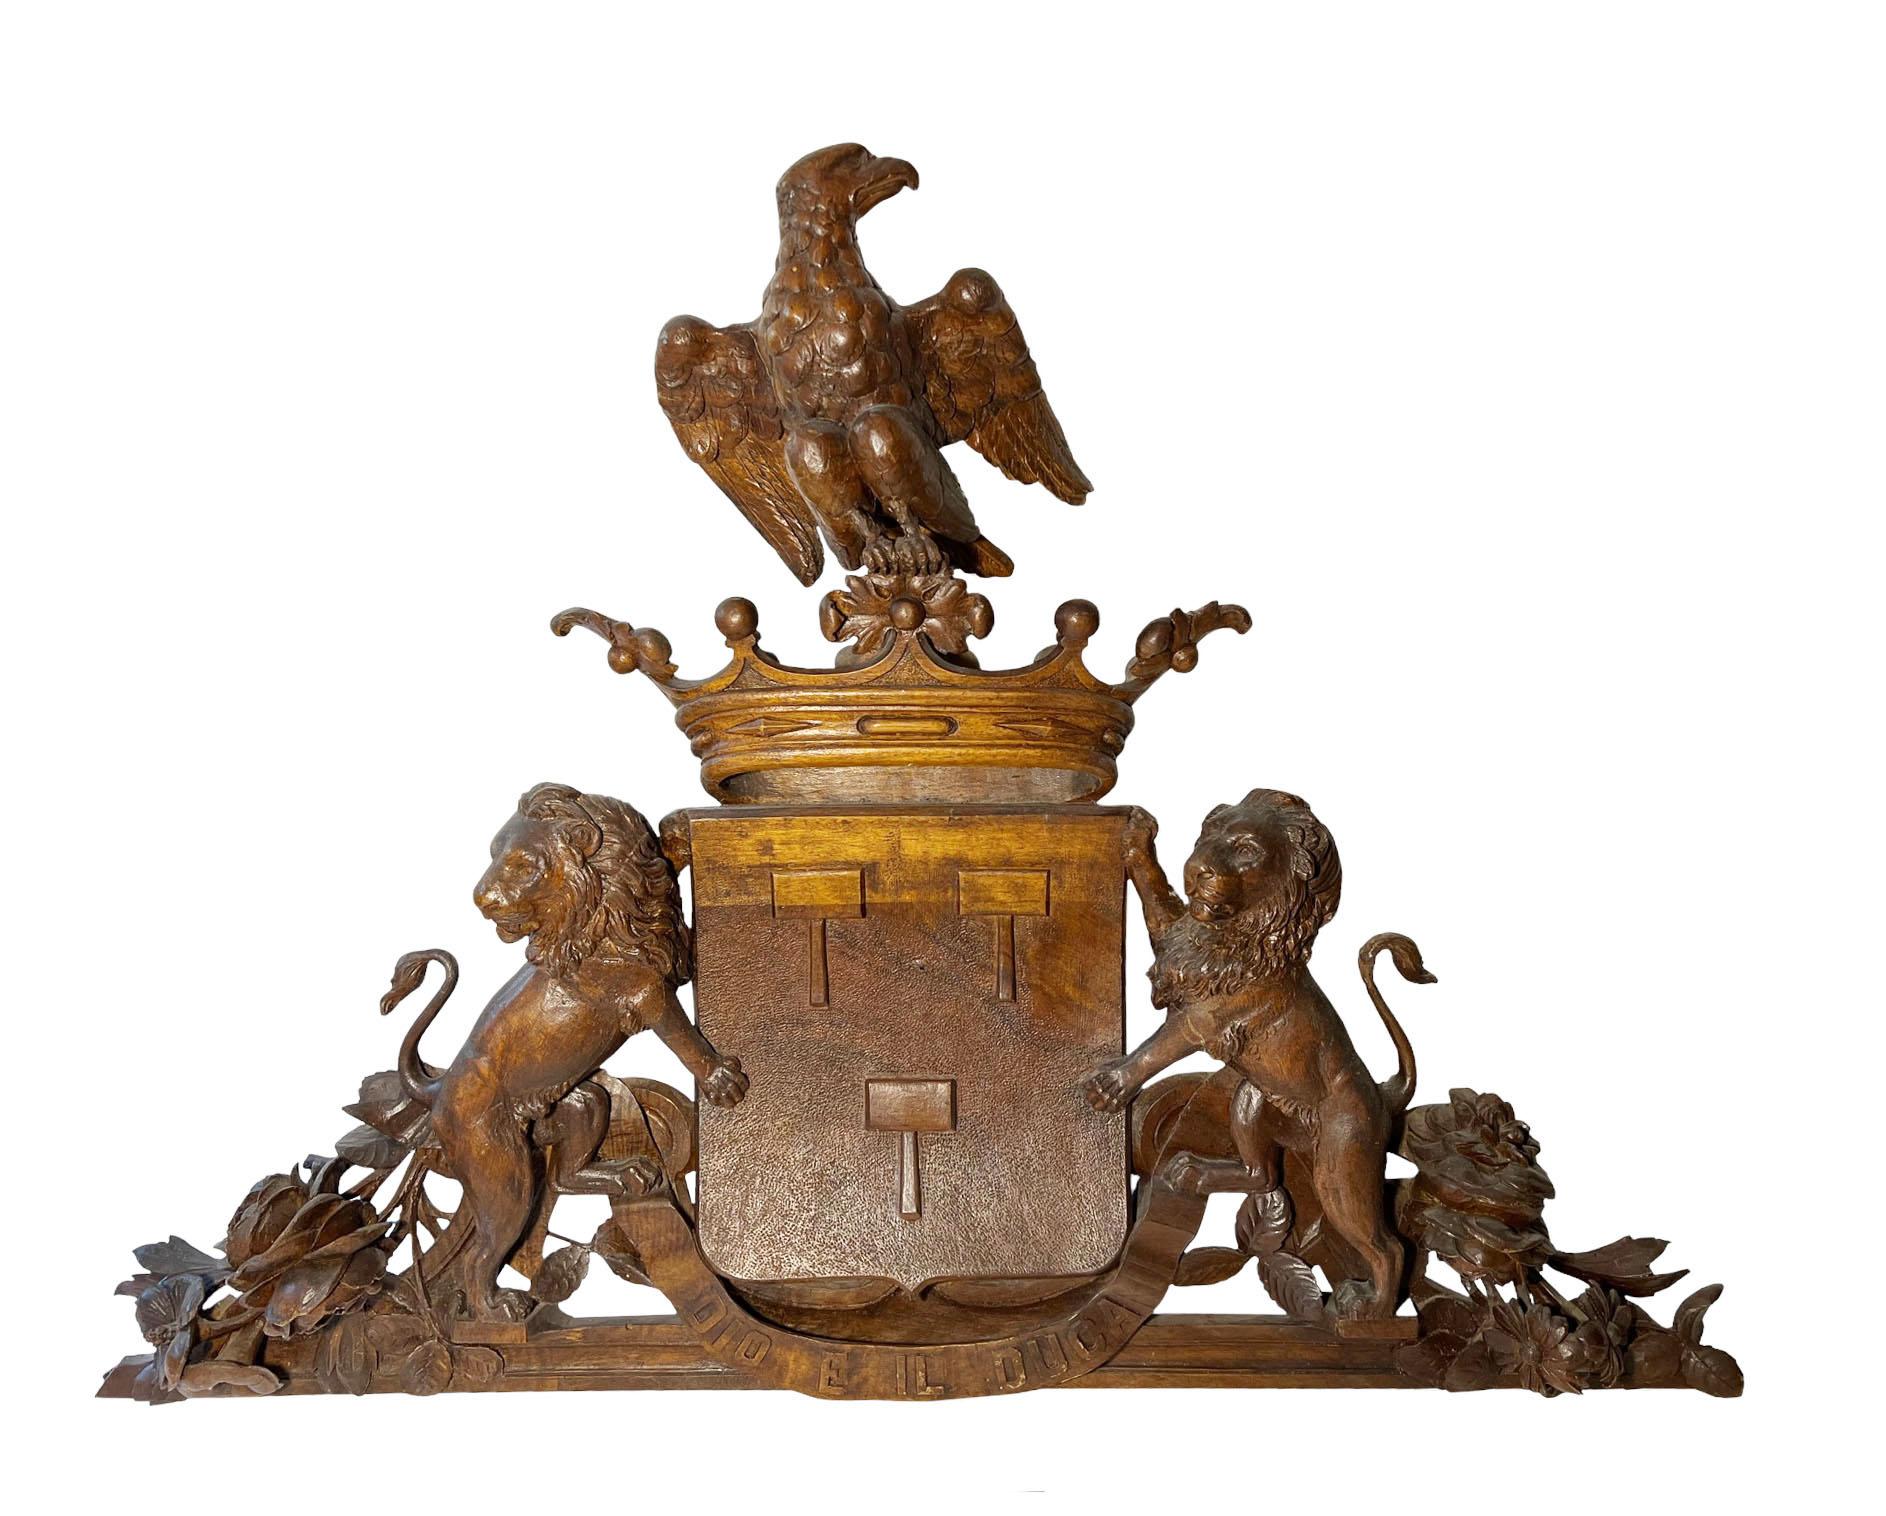 Une paire d'armoiries italiennes du XIXe siècle, sculptées à la main, avec des frontons ornés de couronnes, d'aigles et de lions. Les sculptures sont magnifiquement exécutées. Chaque fronton présente une couronne royale unique et un bouclier sculpté